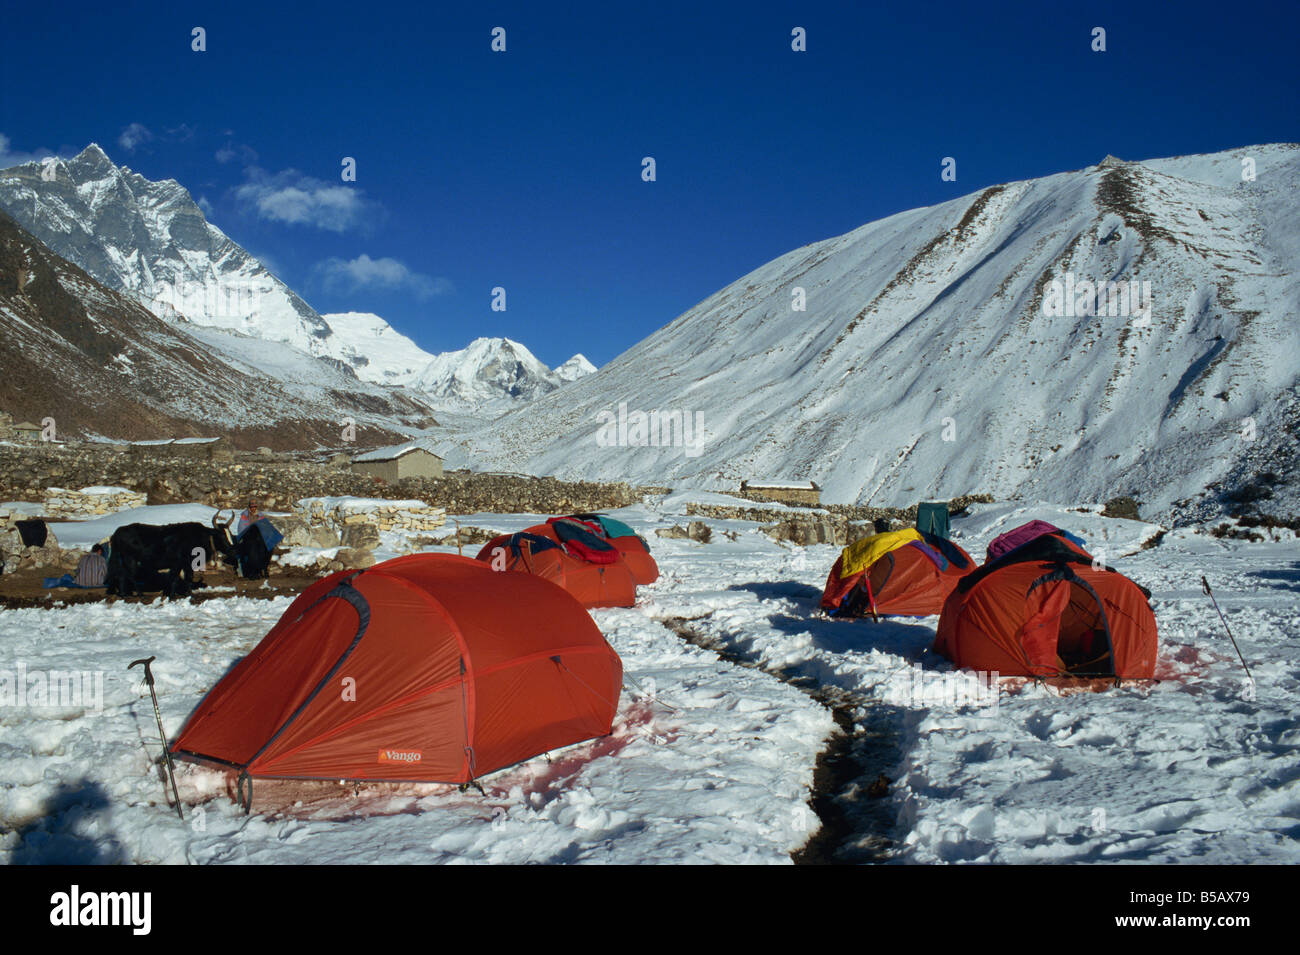 Campingplatz in Dingboche Everest Region Nepal Asien D Poole Stockfoto